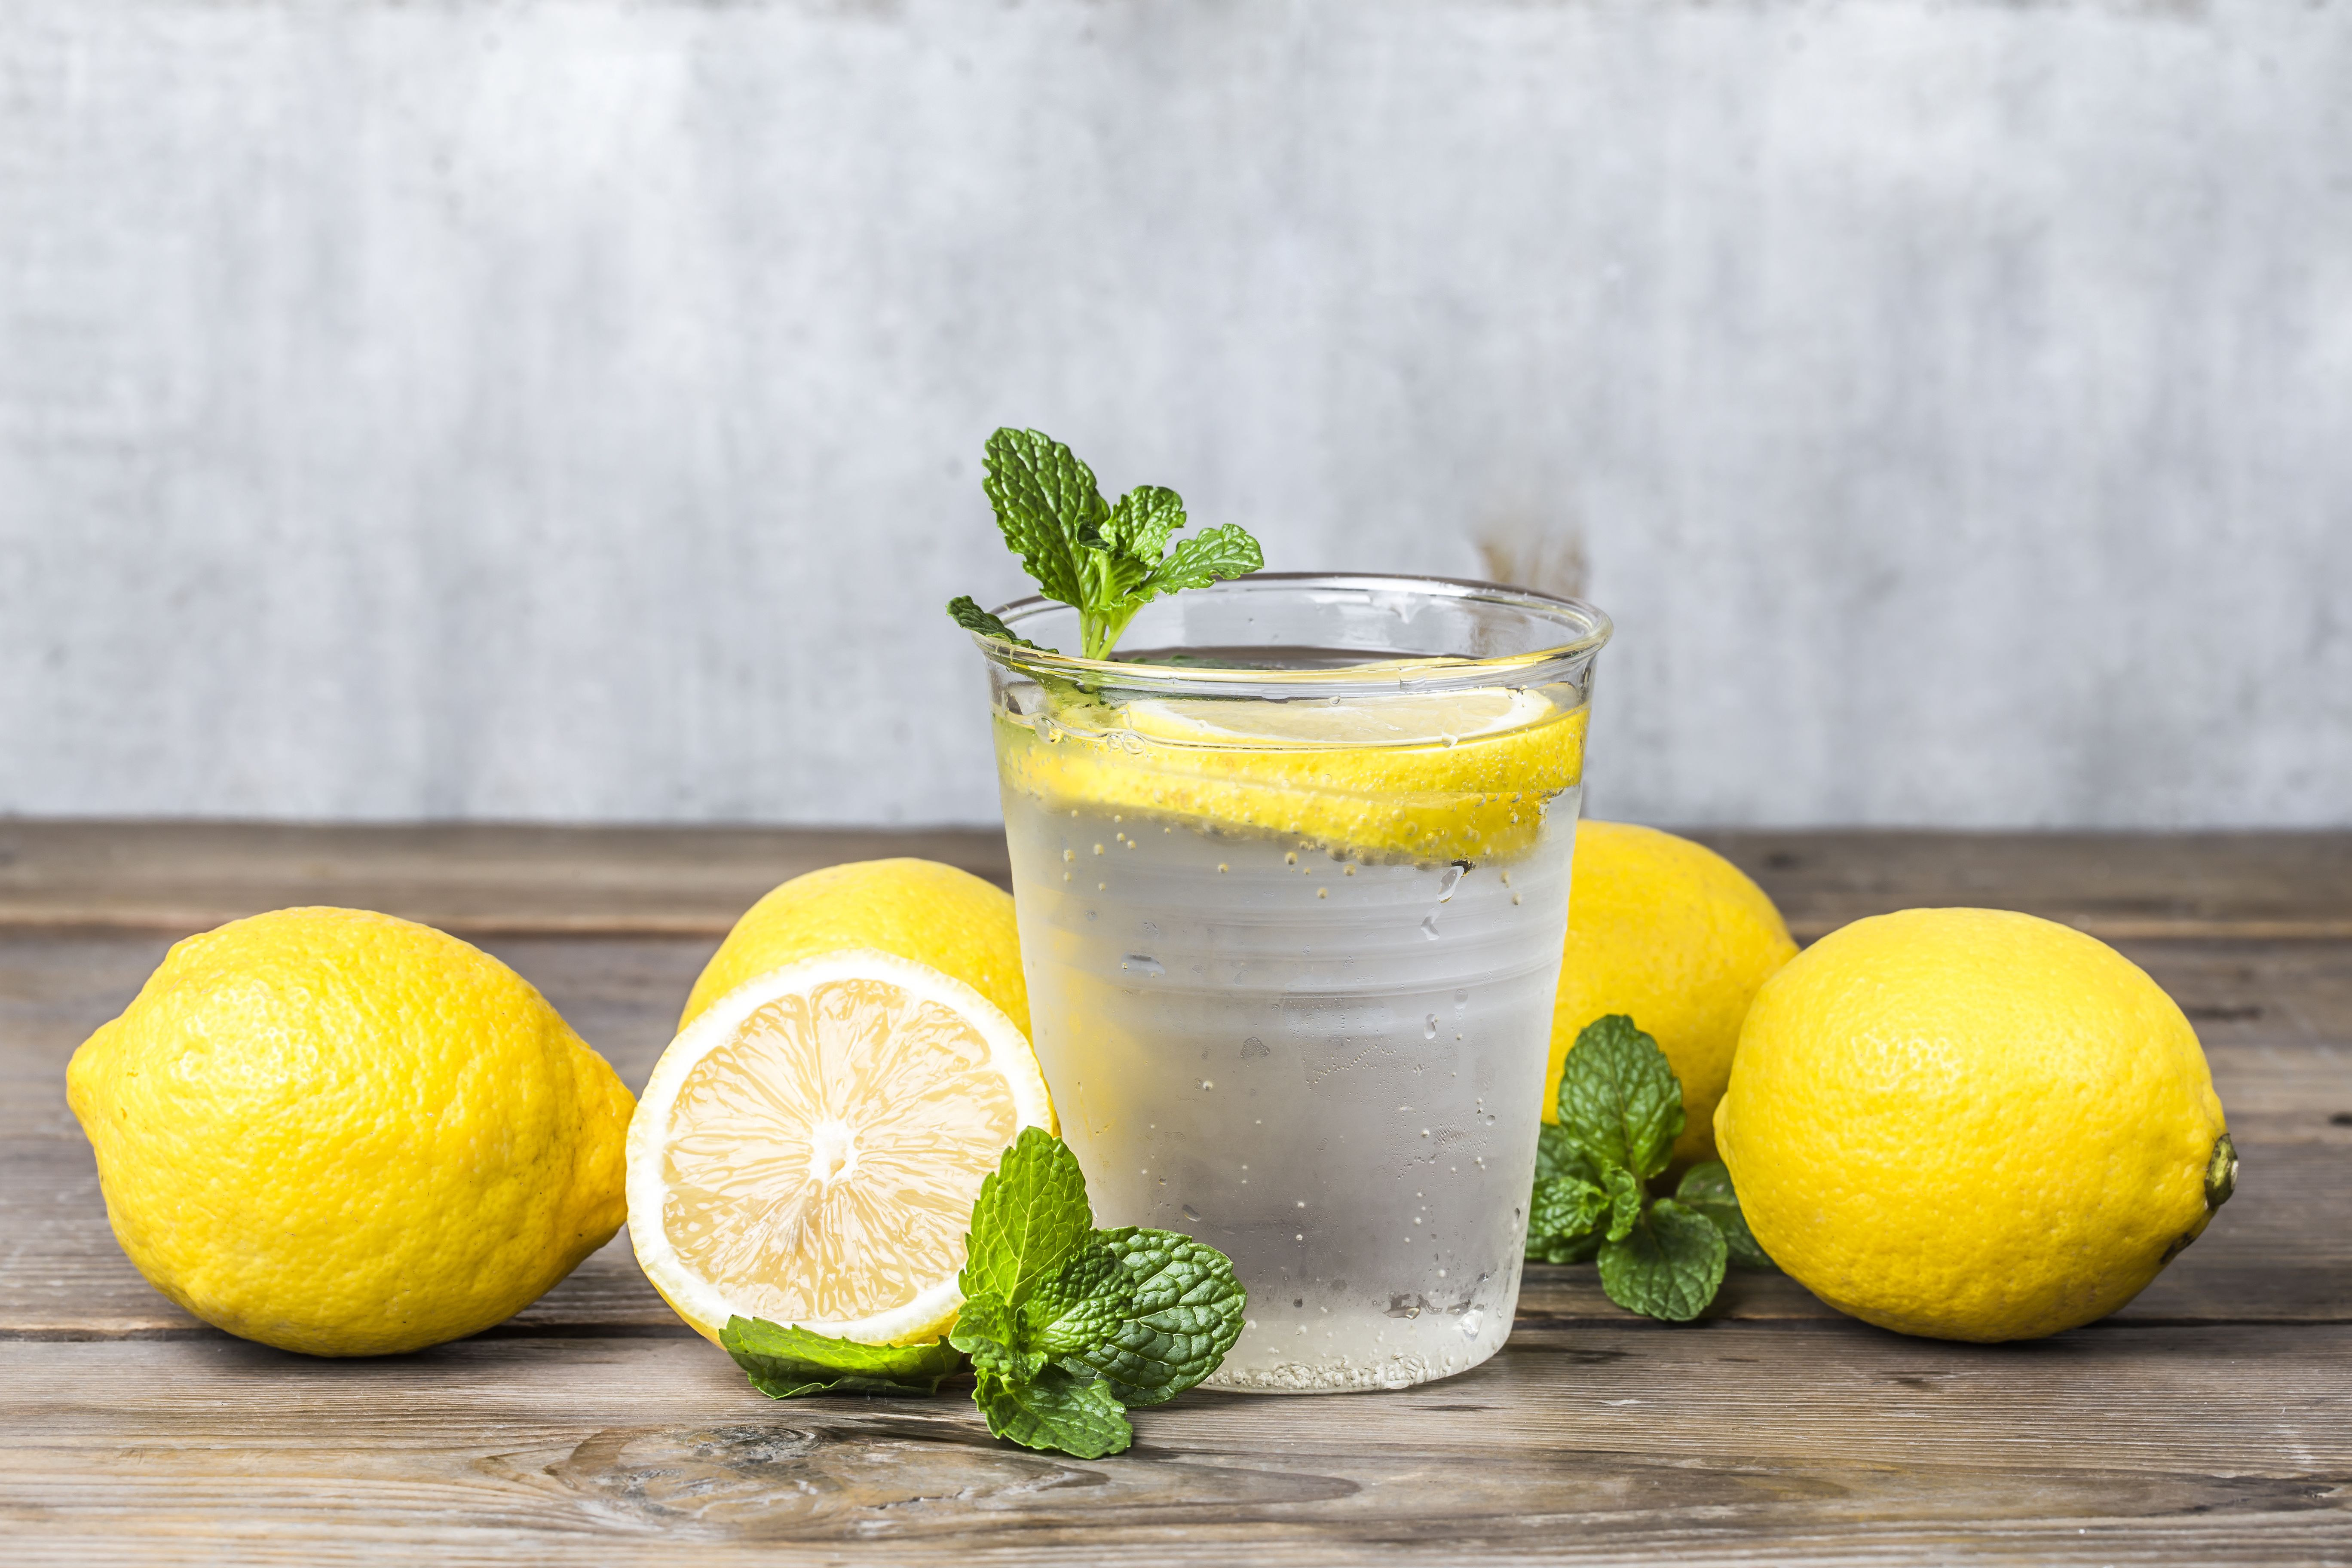 Лемон лид. Нимбу пани. Лимонад Fresh Lemon. Вода с лимоном. Домашний лимонад с мятой.